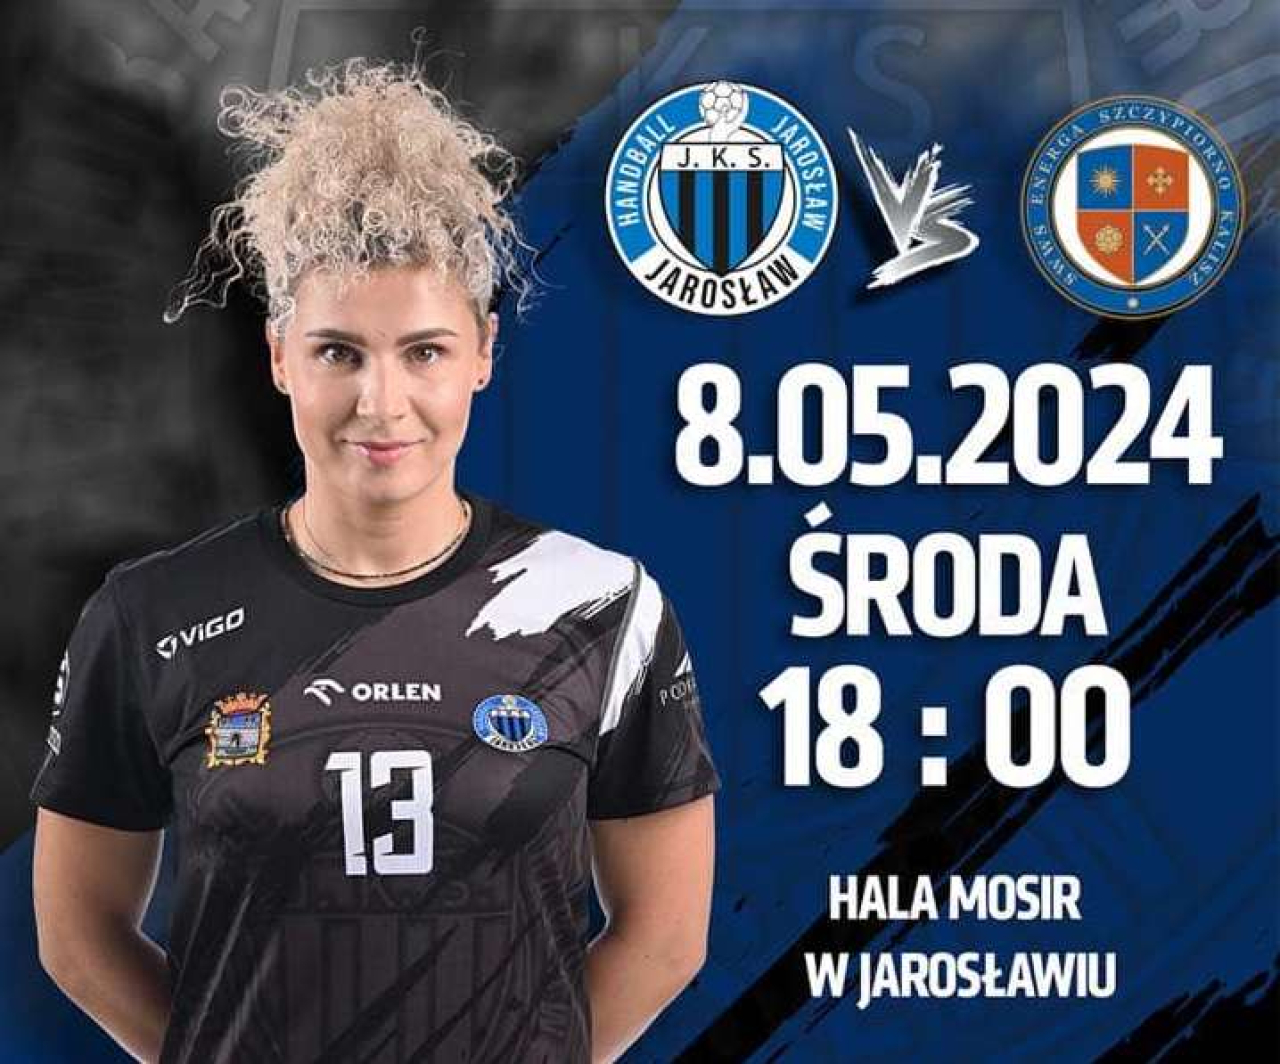 Handball JKS Jarosław vs. AWS Energa Szczypiorno Kalisz